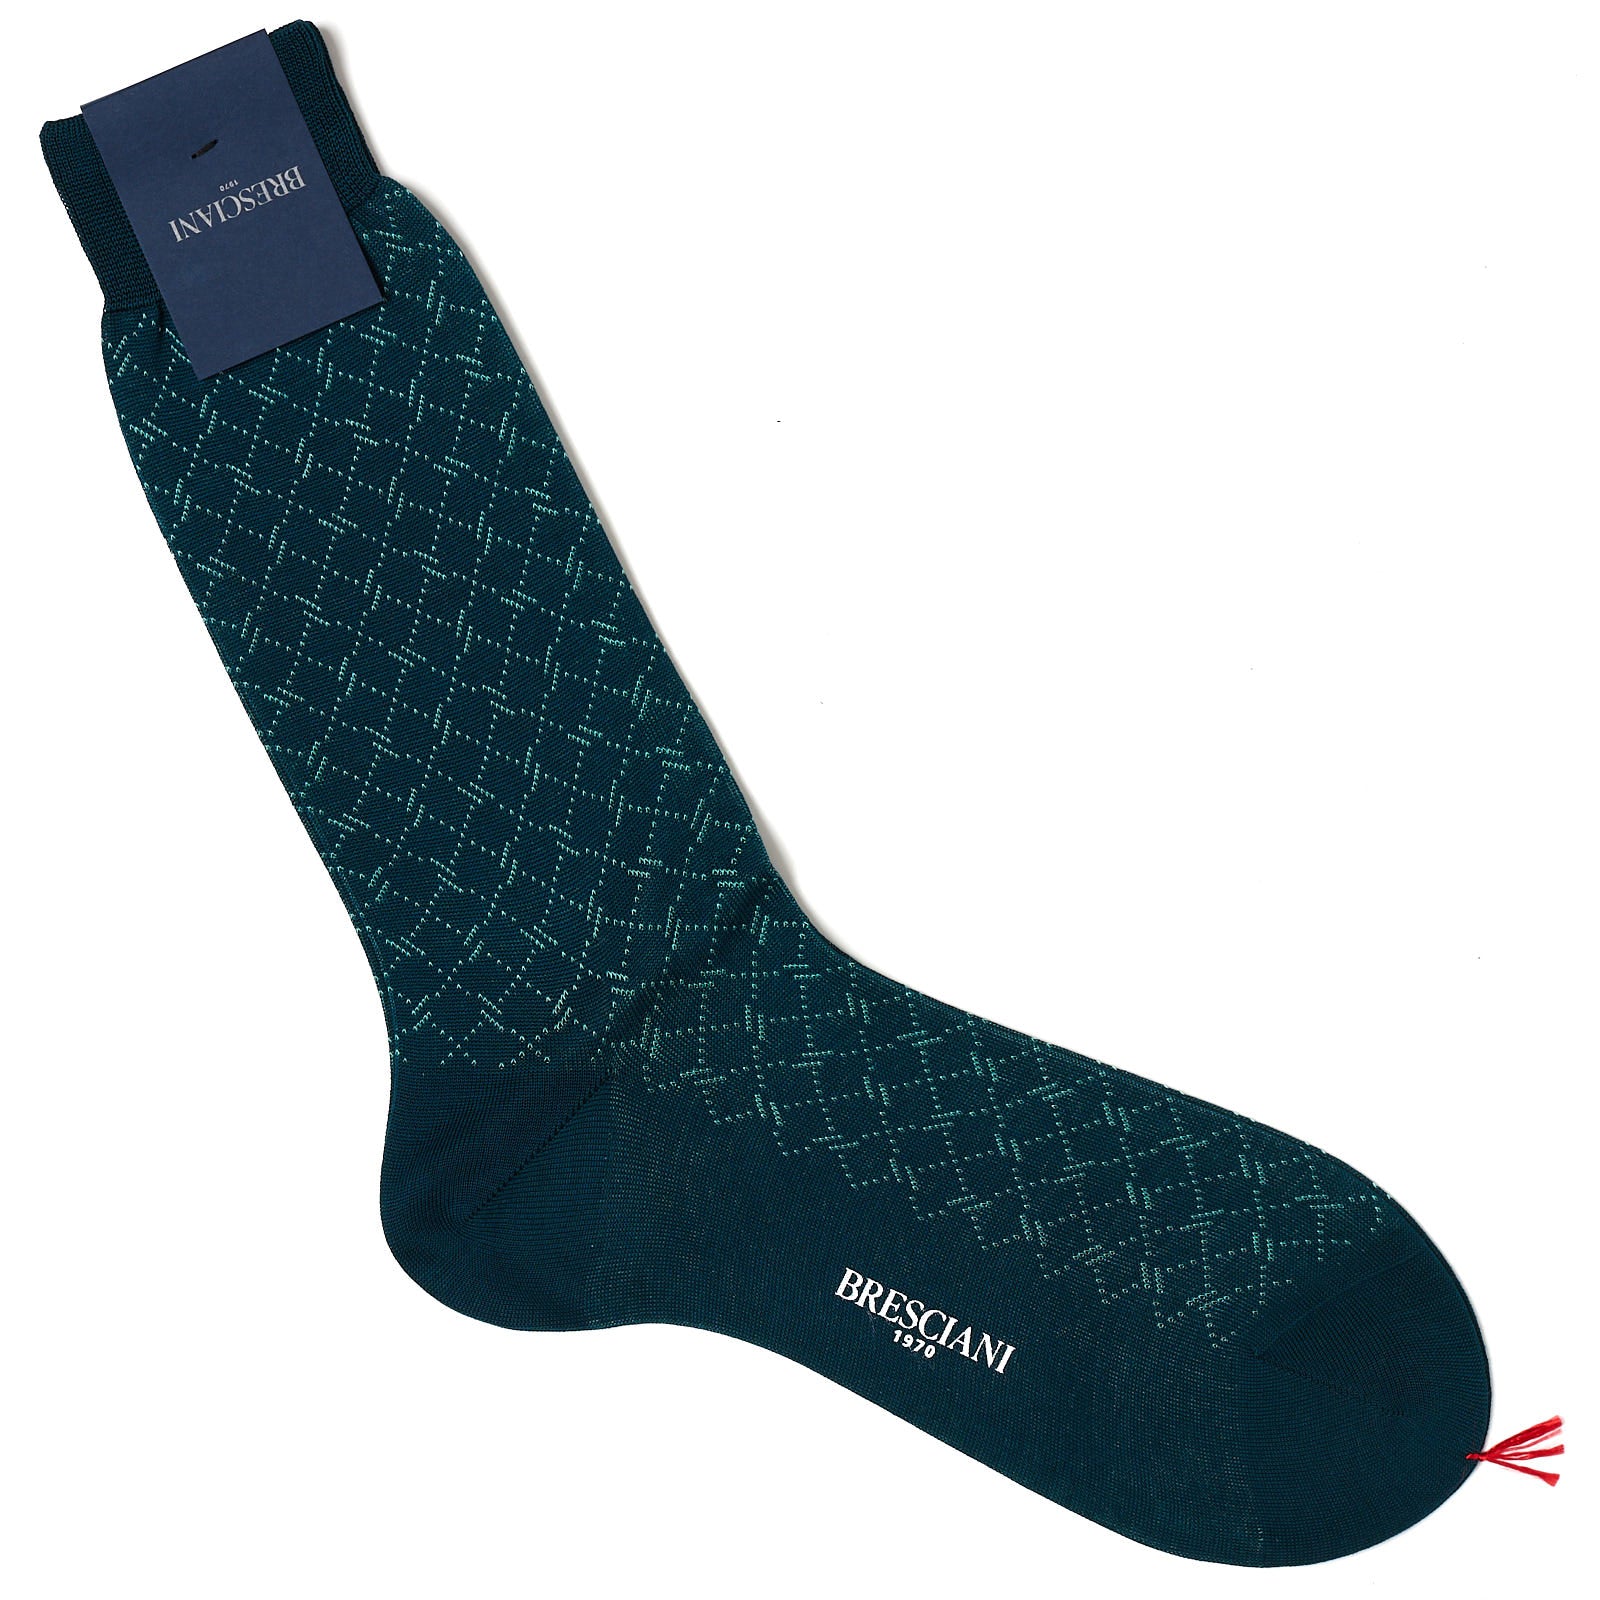 BRESCIANI Cotton Macro-Design Mid Calf Length Socks US M-L BRESCIANI